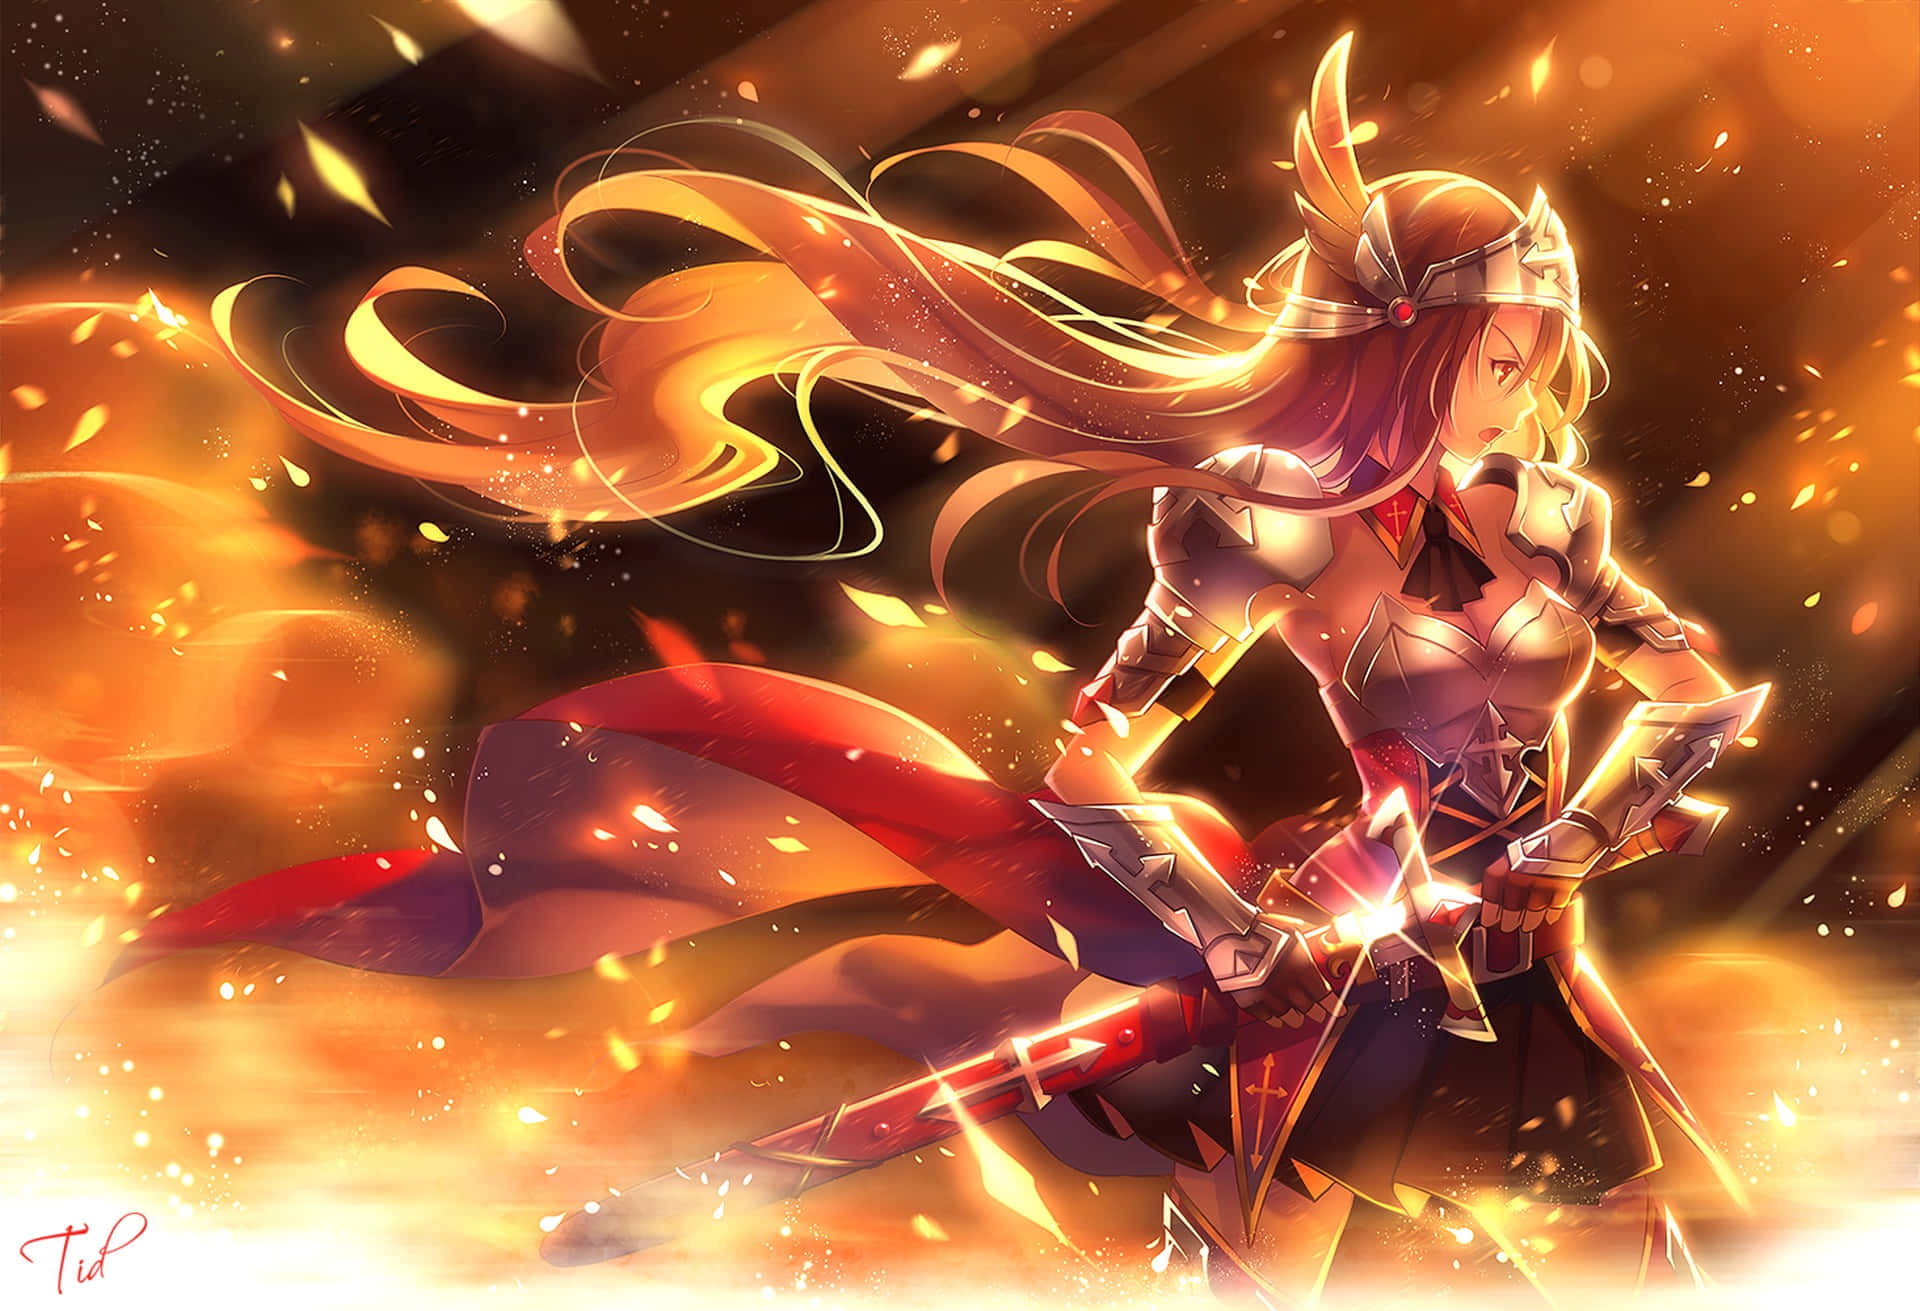 Beundreden Fantastiske Skønhed Af Anime Fire Wallpaper